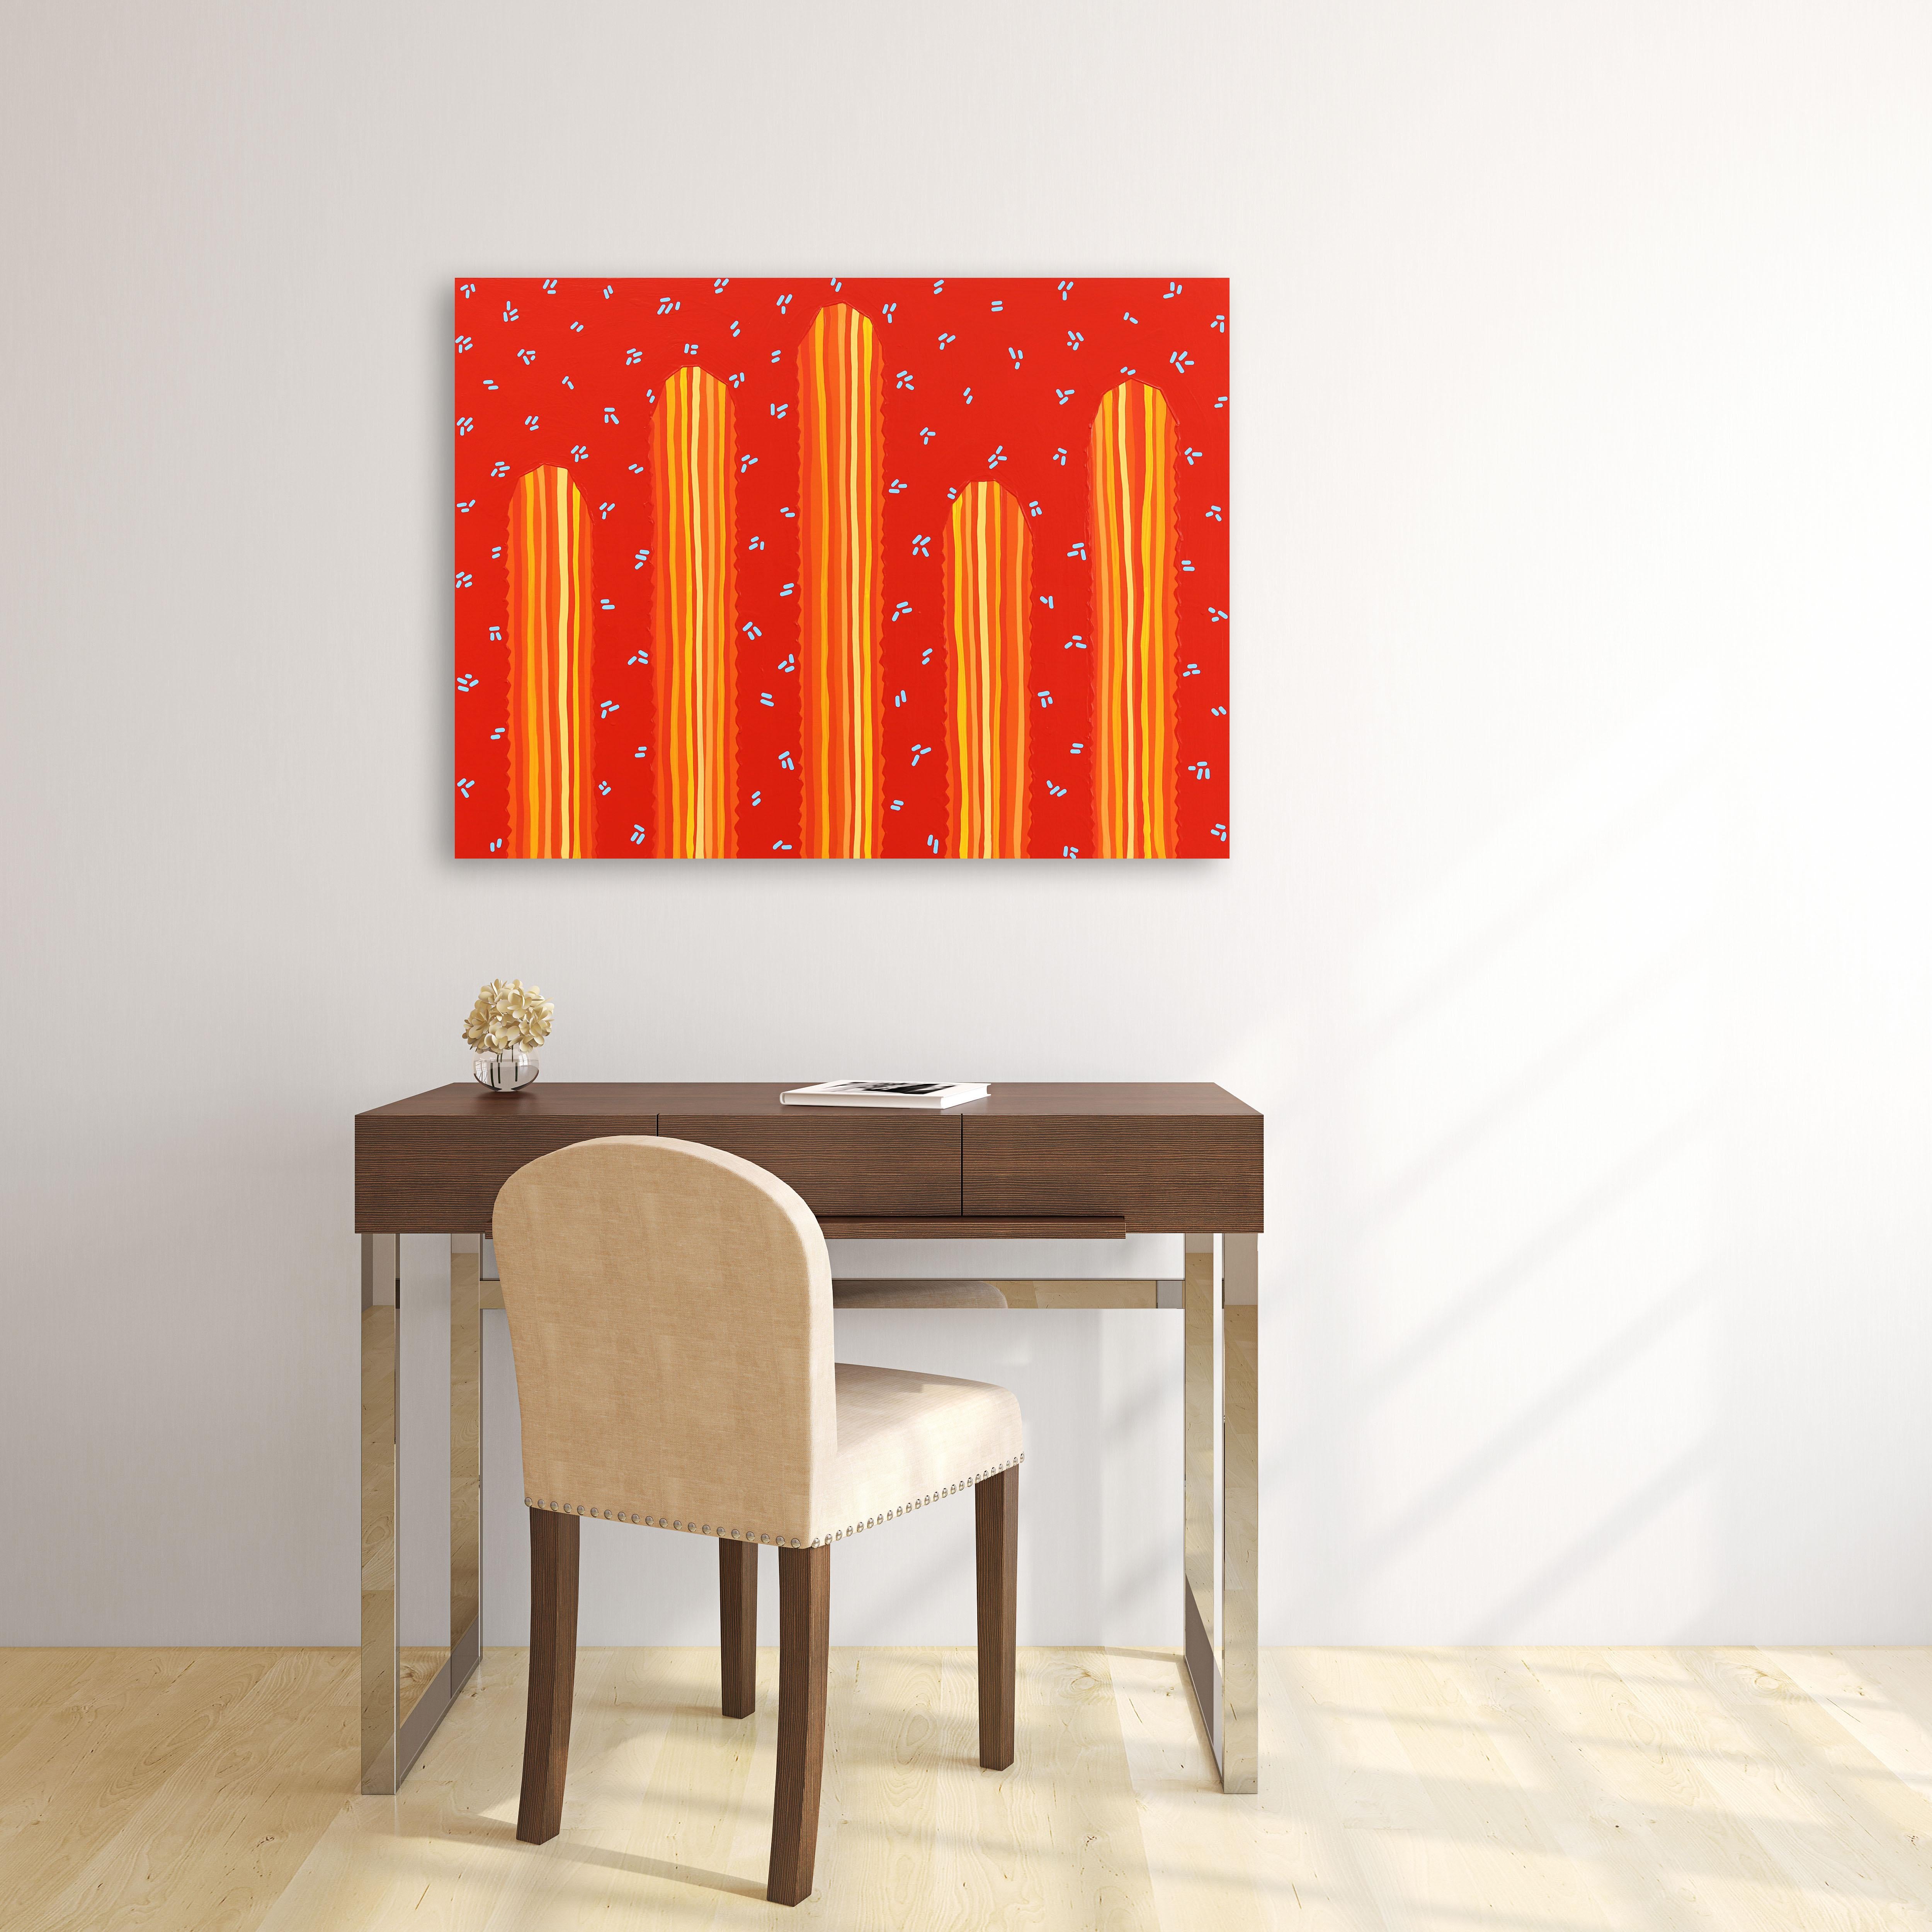 Sedona - Peinture de cactus d'inspiration Pop Art d'inspiration Sud-Ouest rouge orange vif - Painting de Will Beger